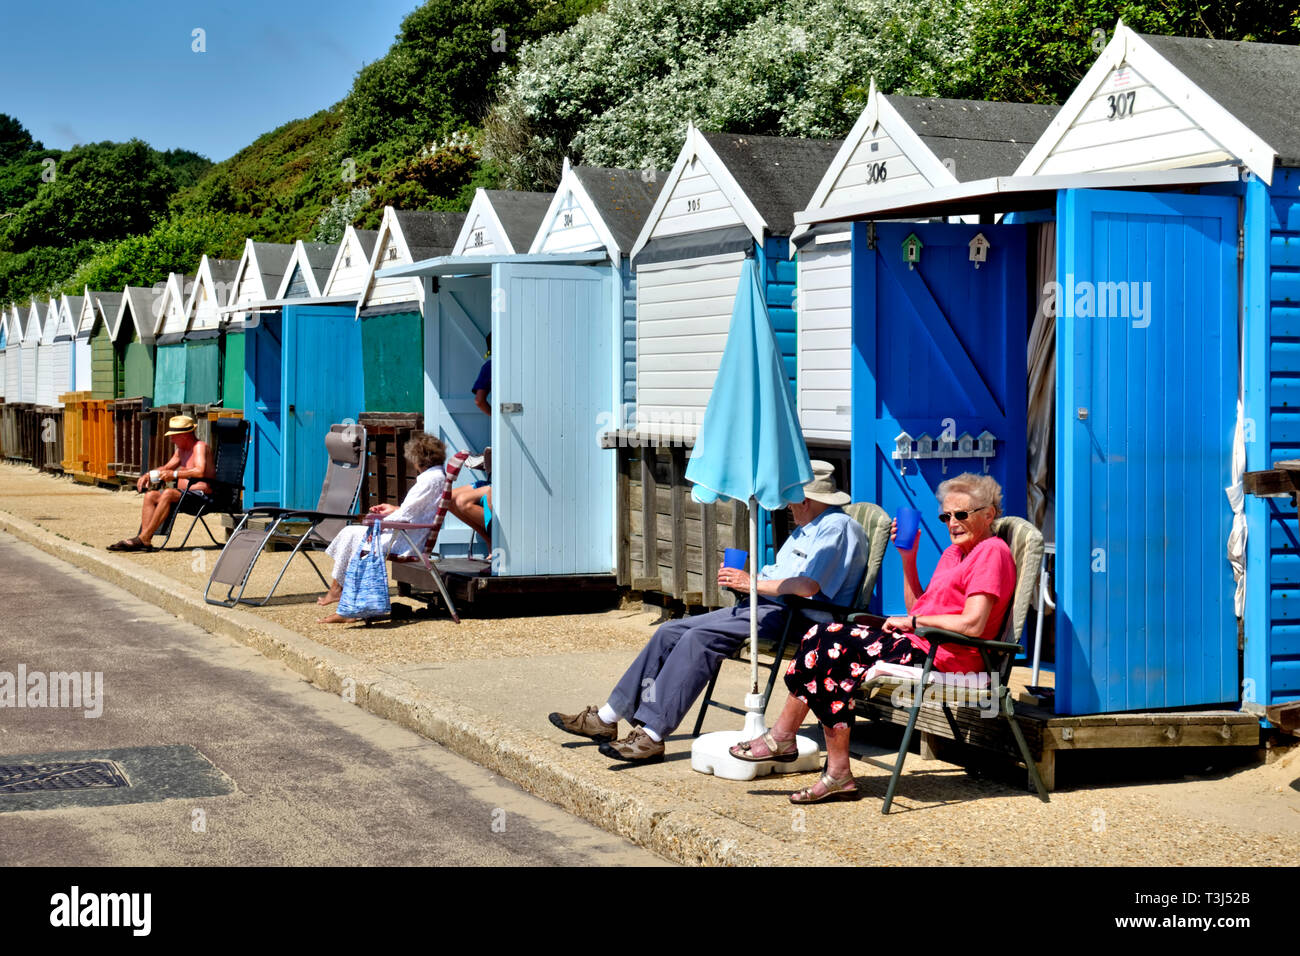 Menschen entspannen und die Sonne am Strand Hütten entlang West Spencer Court Promenade am Meer in Bournemouth, Dorset, England, Großbritannien genießen Stockfoto